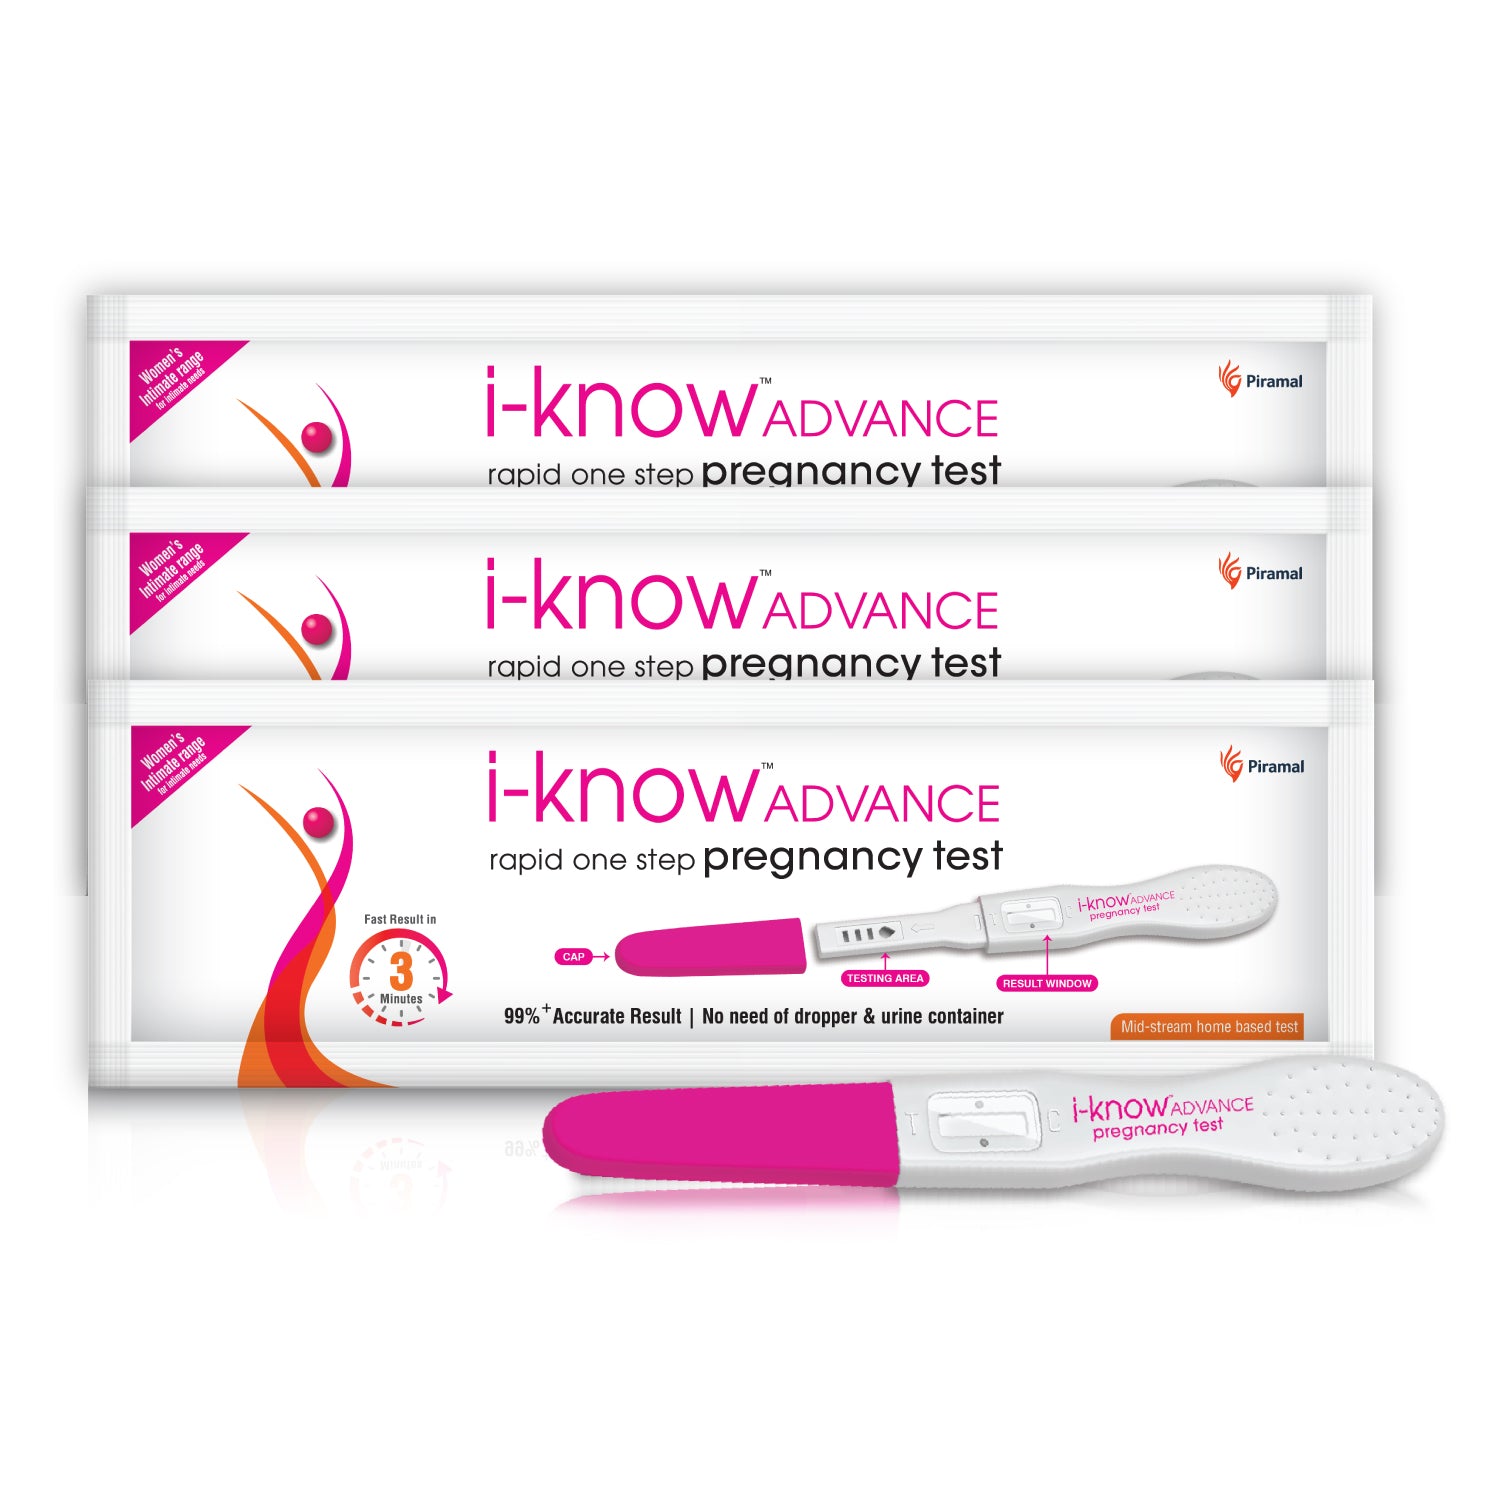 i-know ADVANCE rapid one step pregnancy test